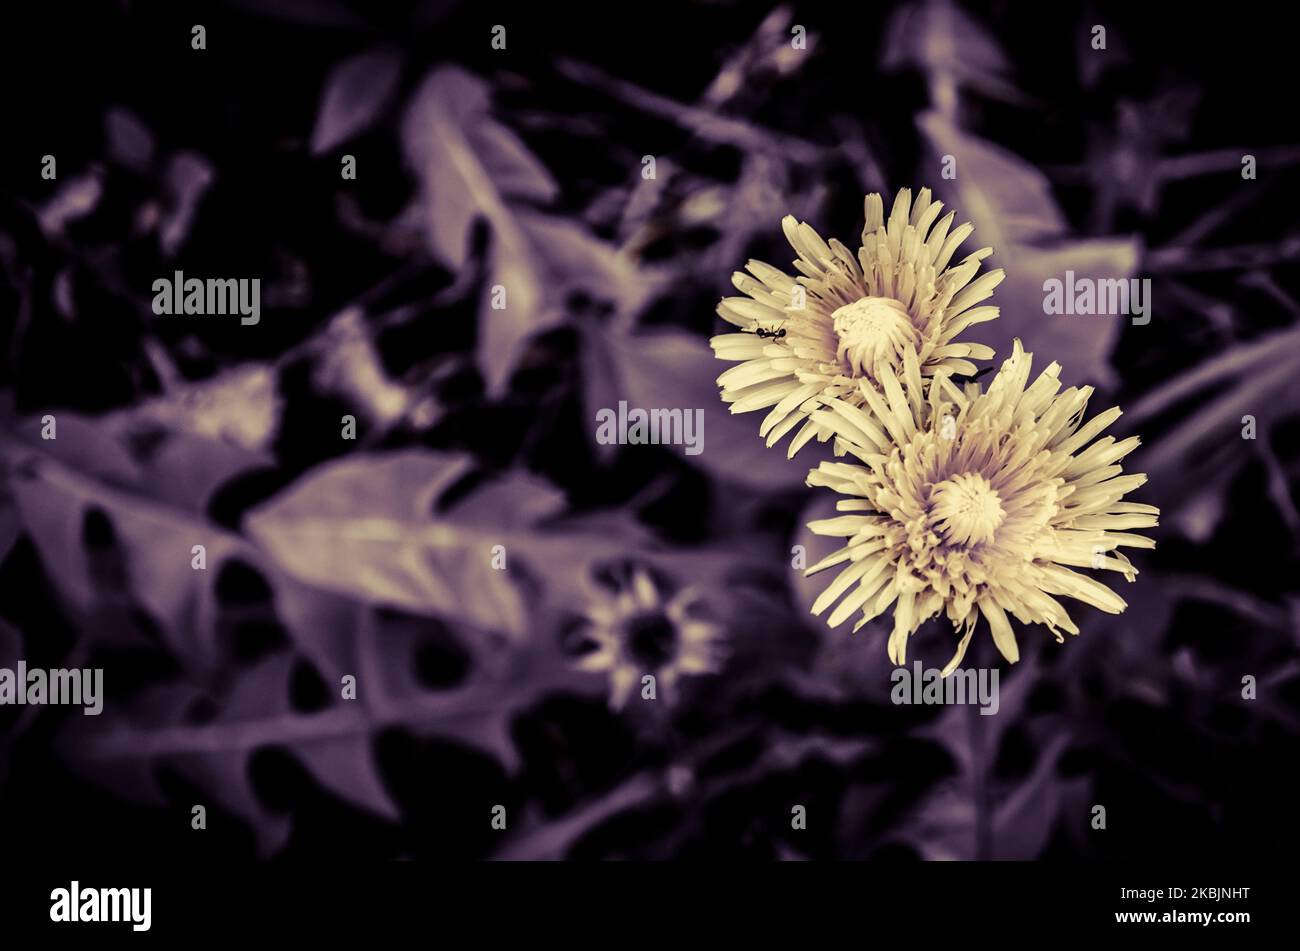 fiore giallo dente di leone ed effetto desaturato vista dall'alto Foto Stock